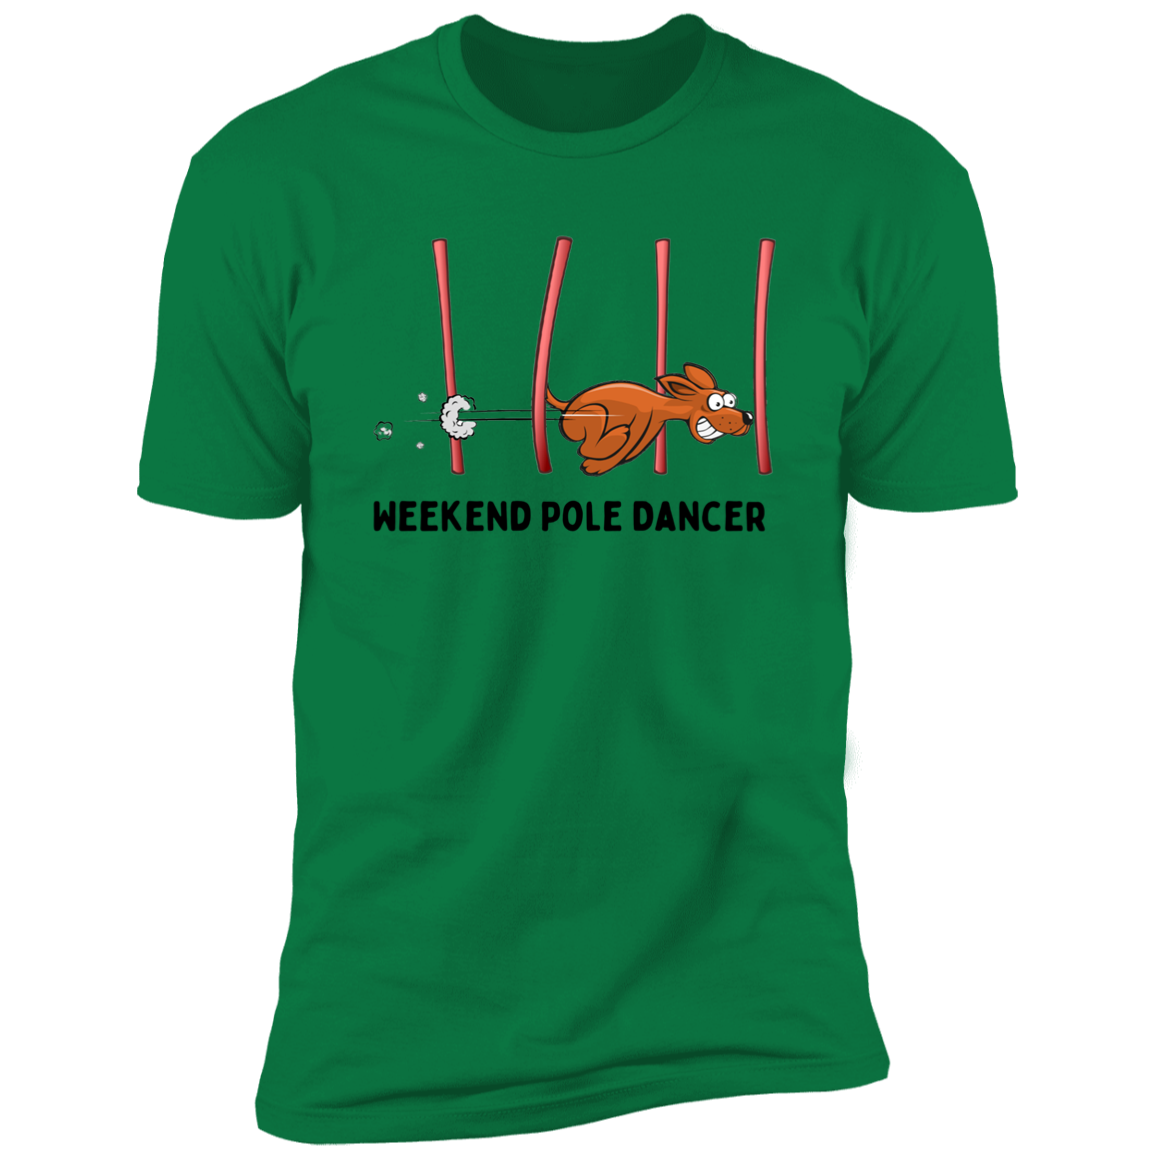 Weekend Pole Dancer Dog Agility T-Shirt, dog shirt for humans, sporting dog shirt, agility dog shirt, in kelly green